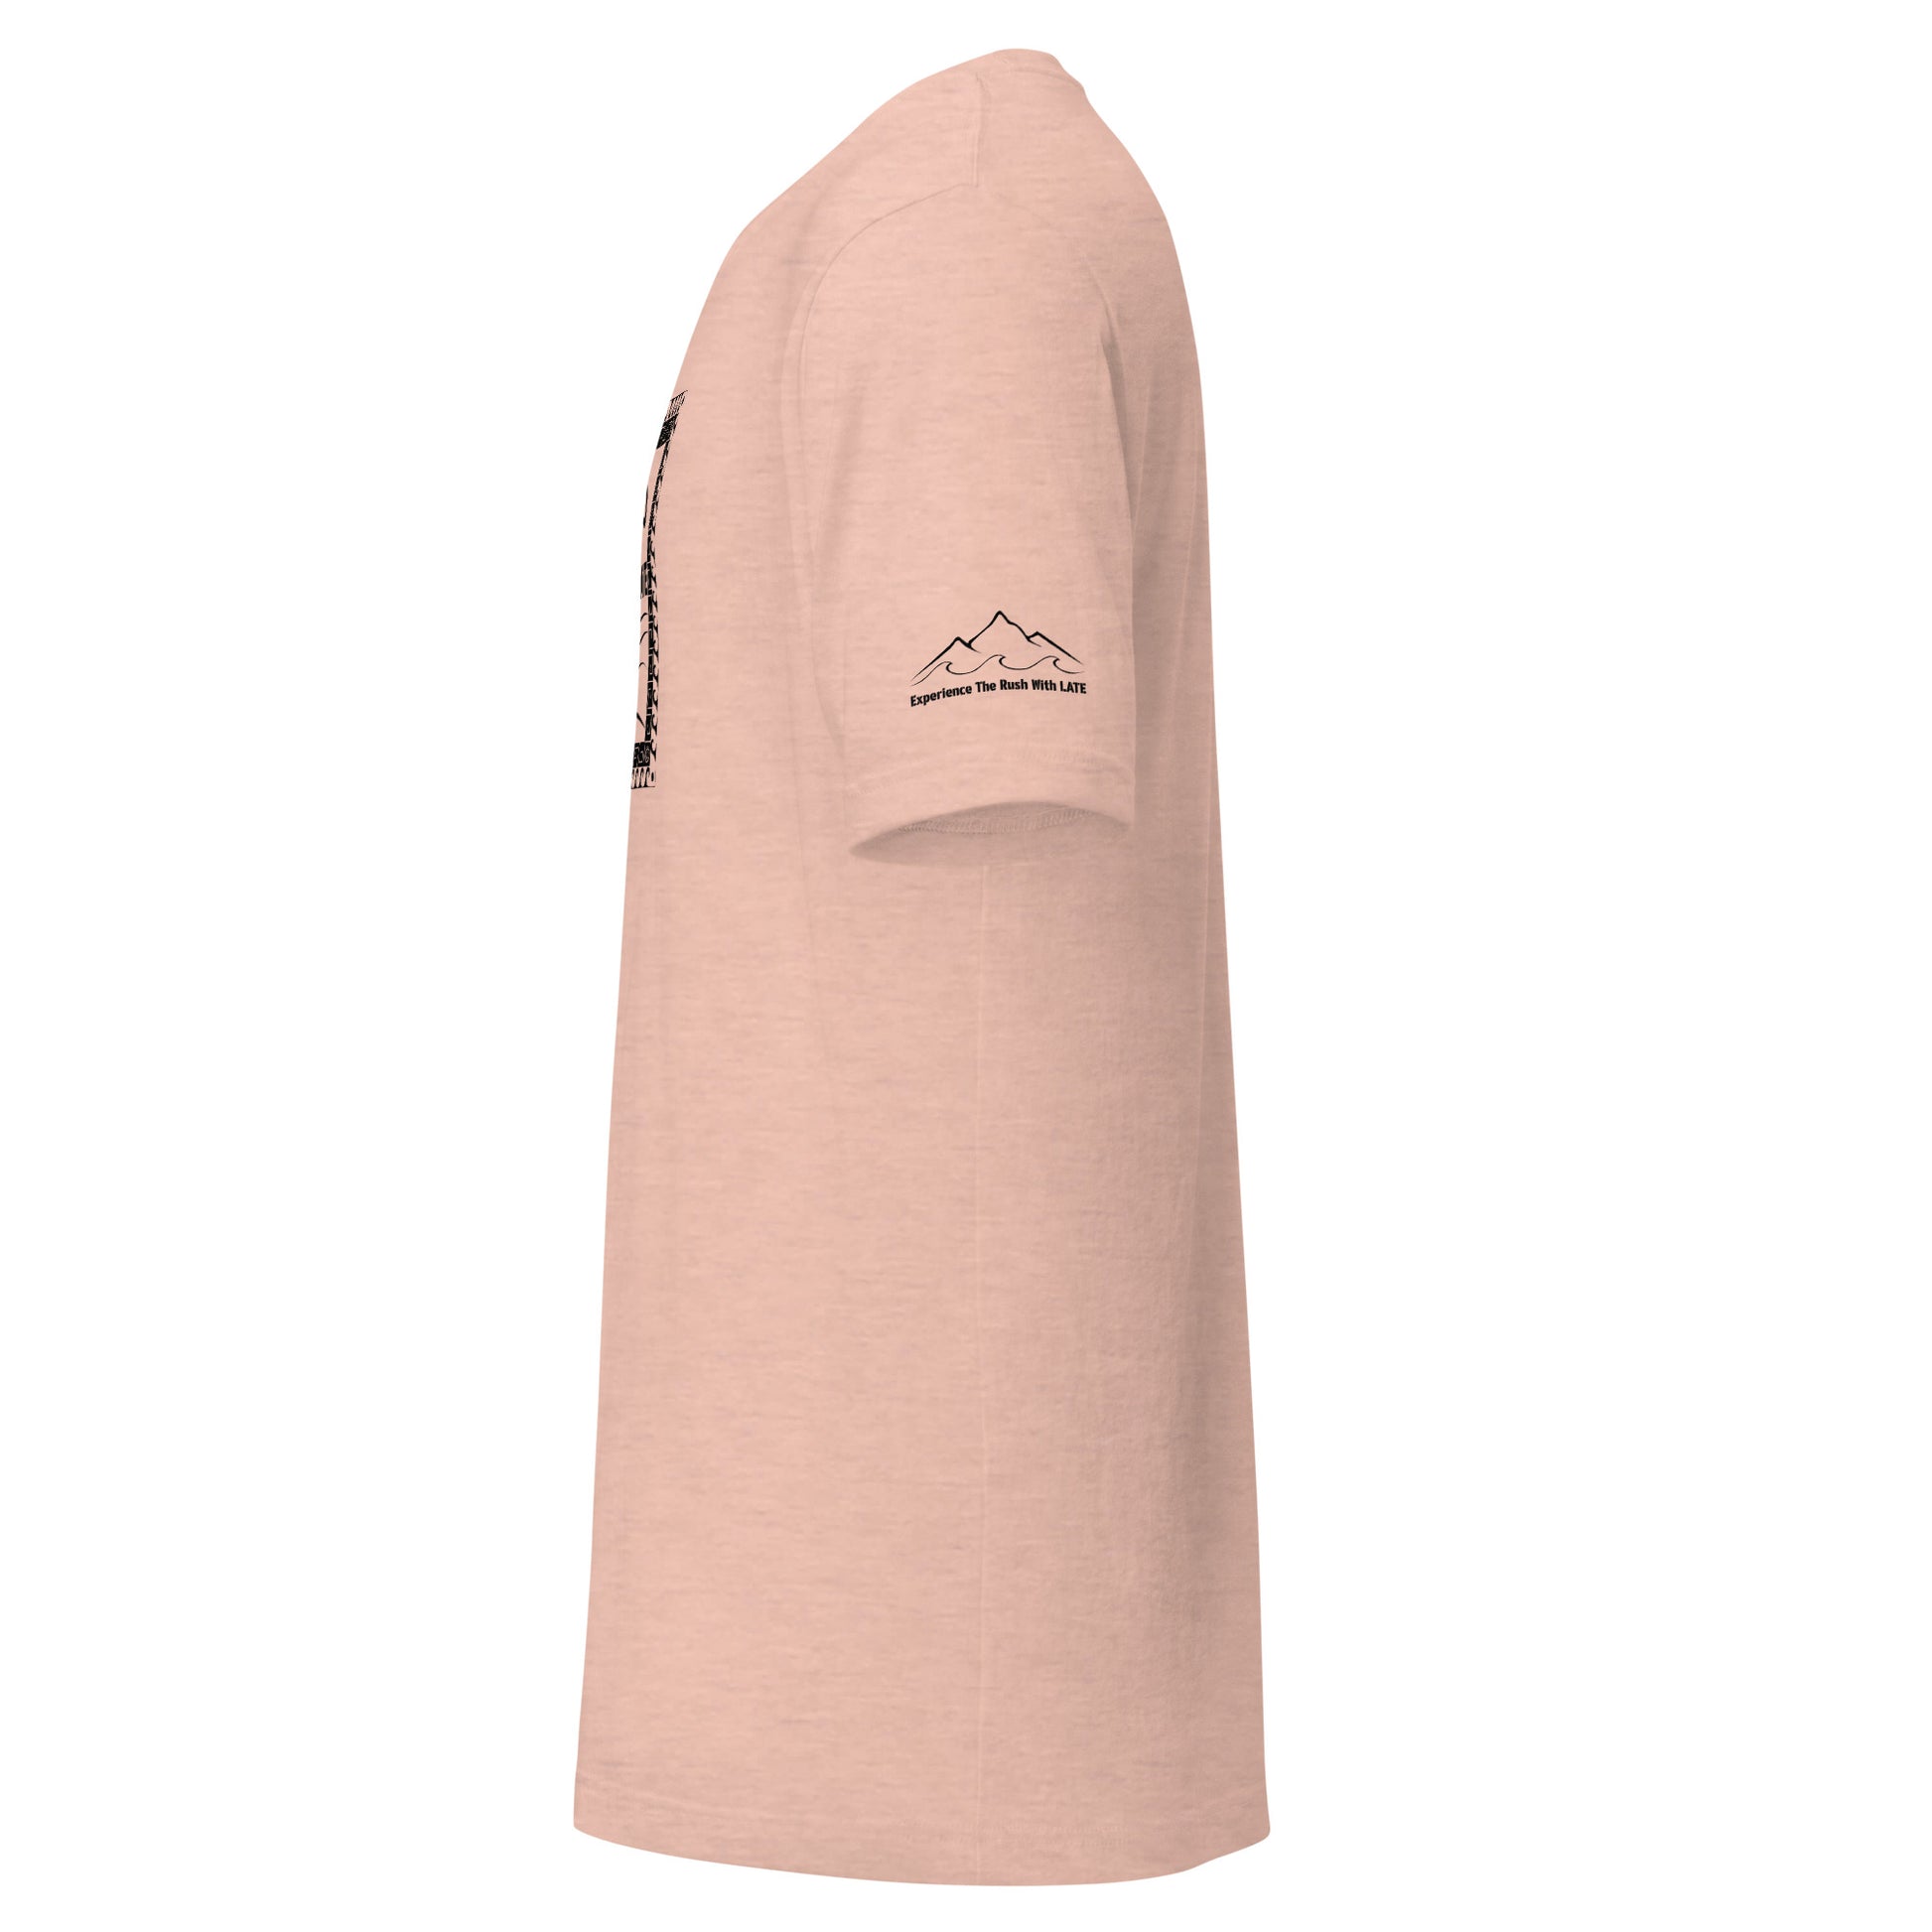 T-Shirt Tricky Wave design manche montagne et vague texte experience the rush et logo Late marque de vêtement de surf skate snowboard tshirt rose